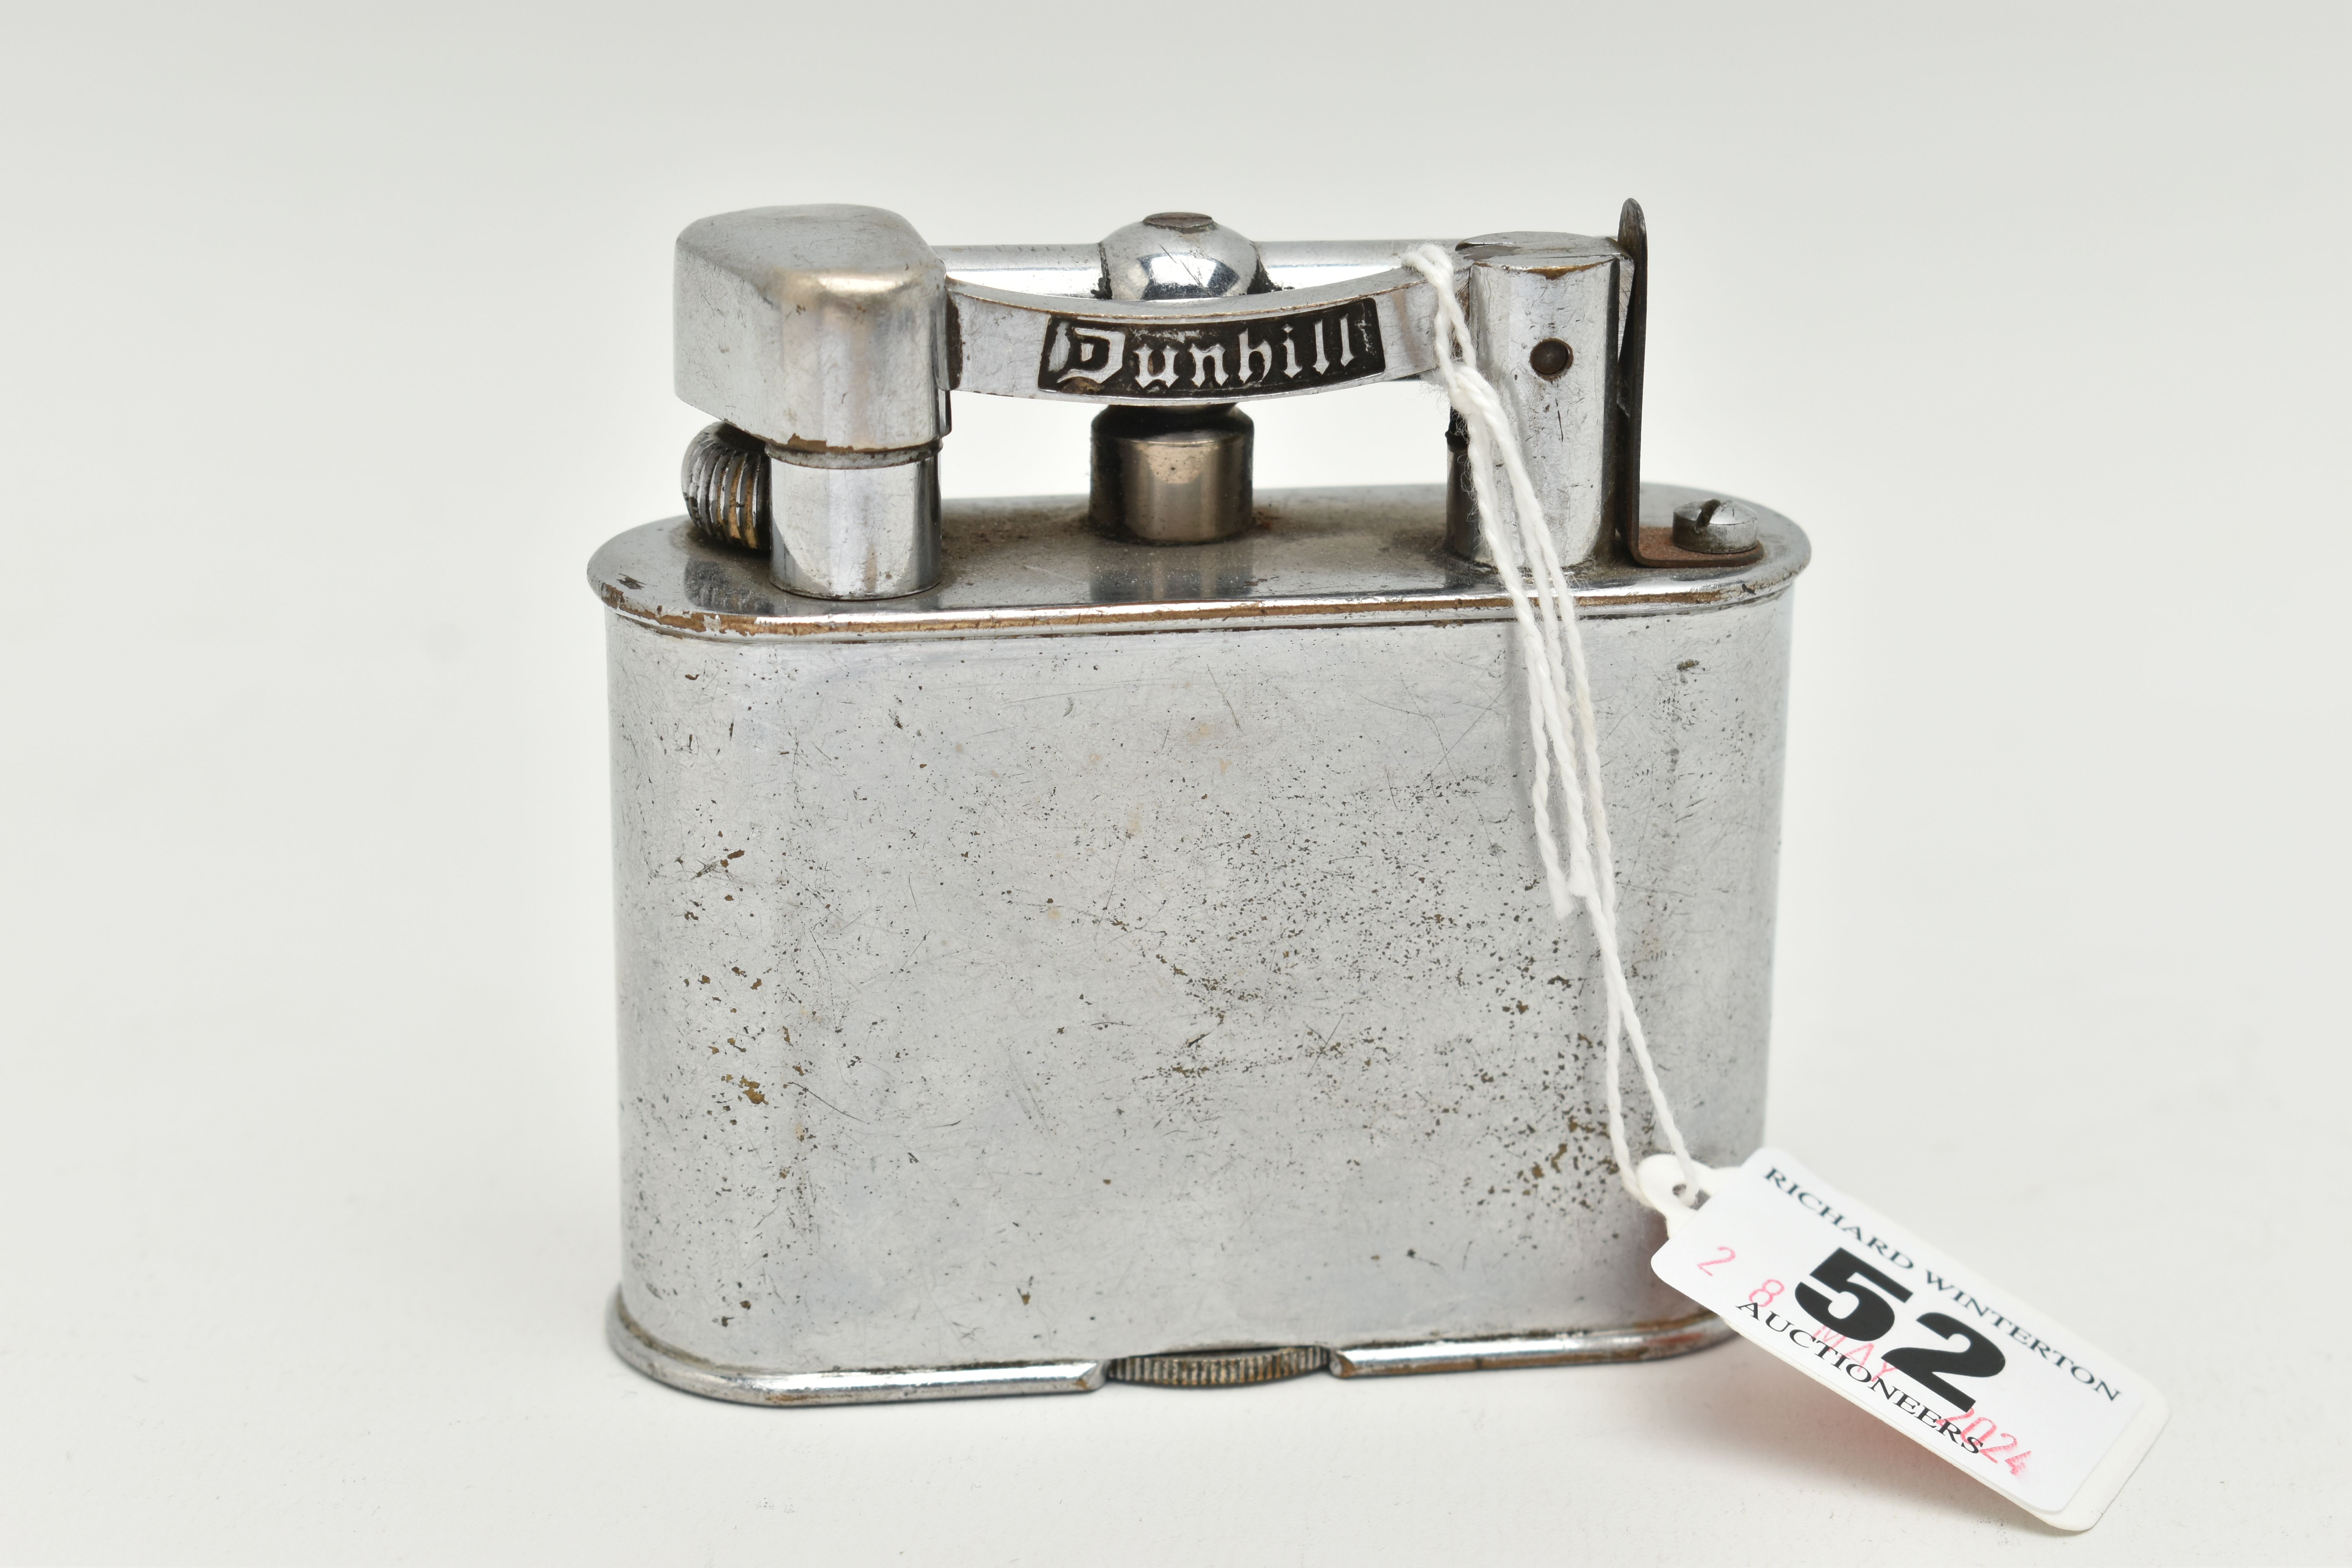 A LARGE DUNHILL LIGHTER, base metal lighter, signed to the base 'Dunhill Lighter', stamped patent